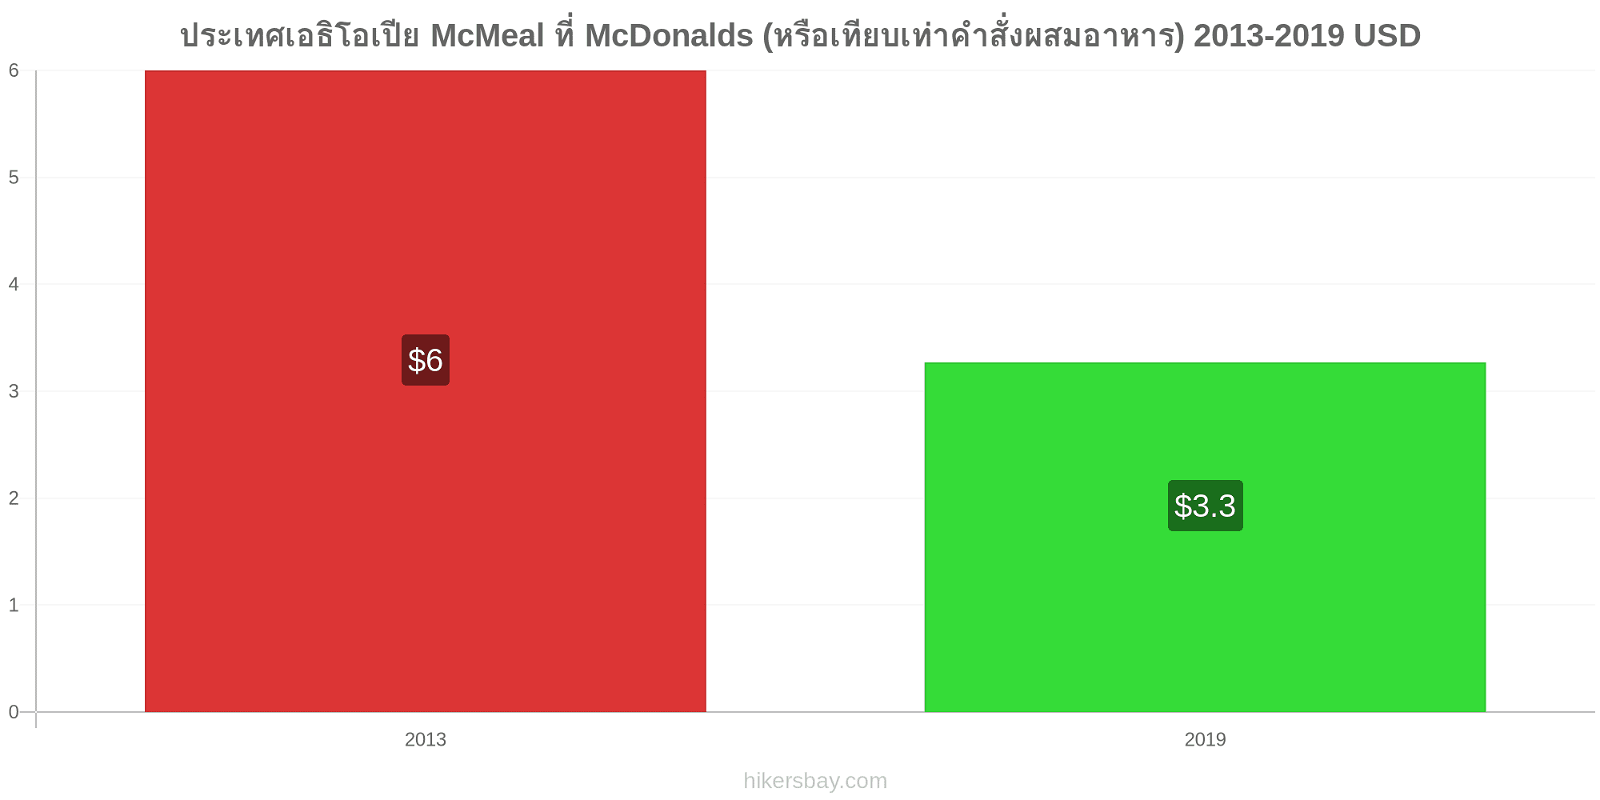 ประเทศเอธิโอเปีย การเปลี่ยนแปลงราคา McMeal ที่ McDonalds (หรือเทียบเท่าคำสั่งผสมอาหาร) hikersbay.com